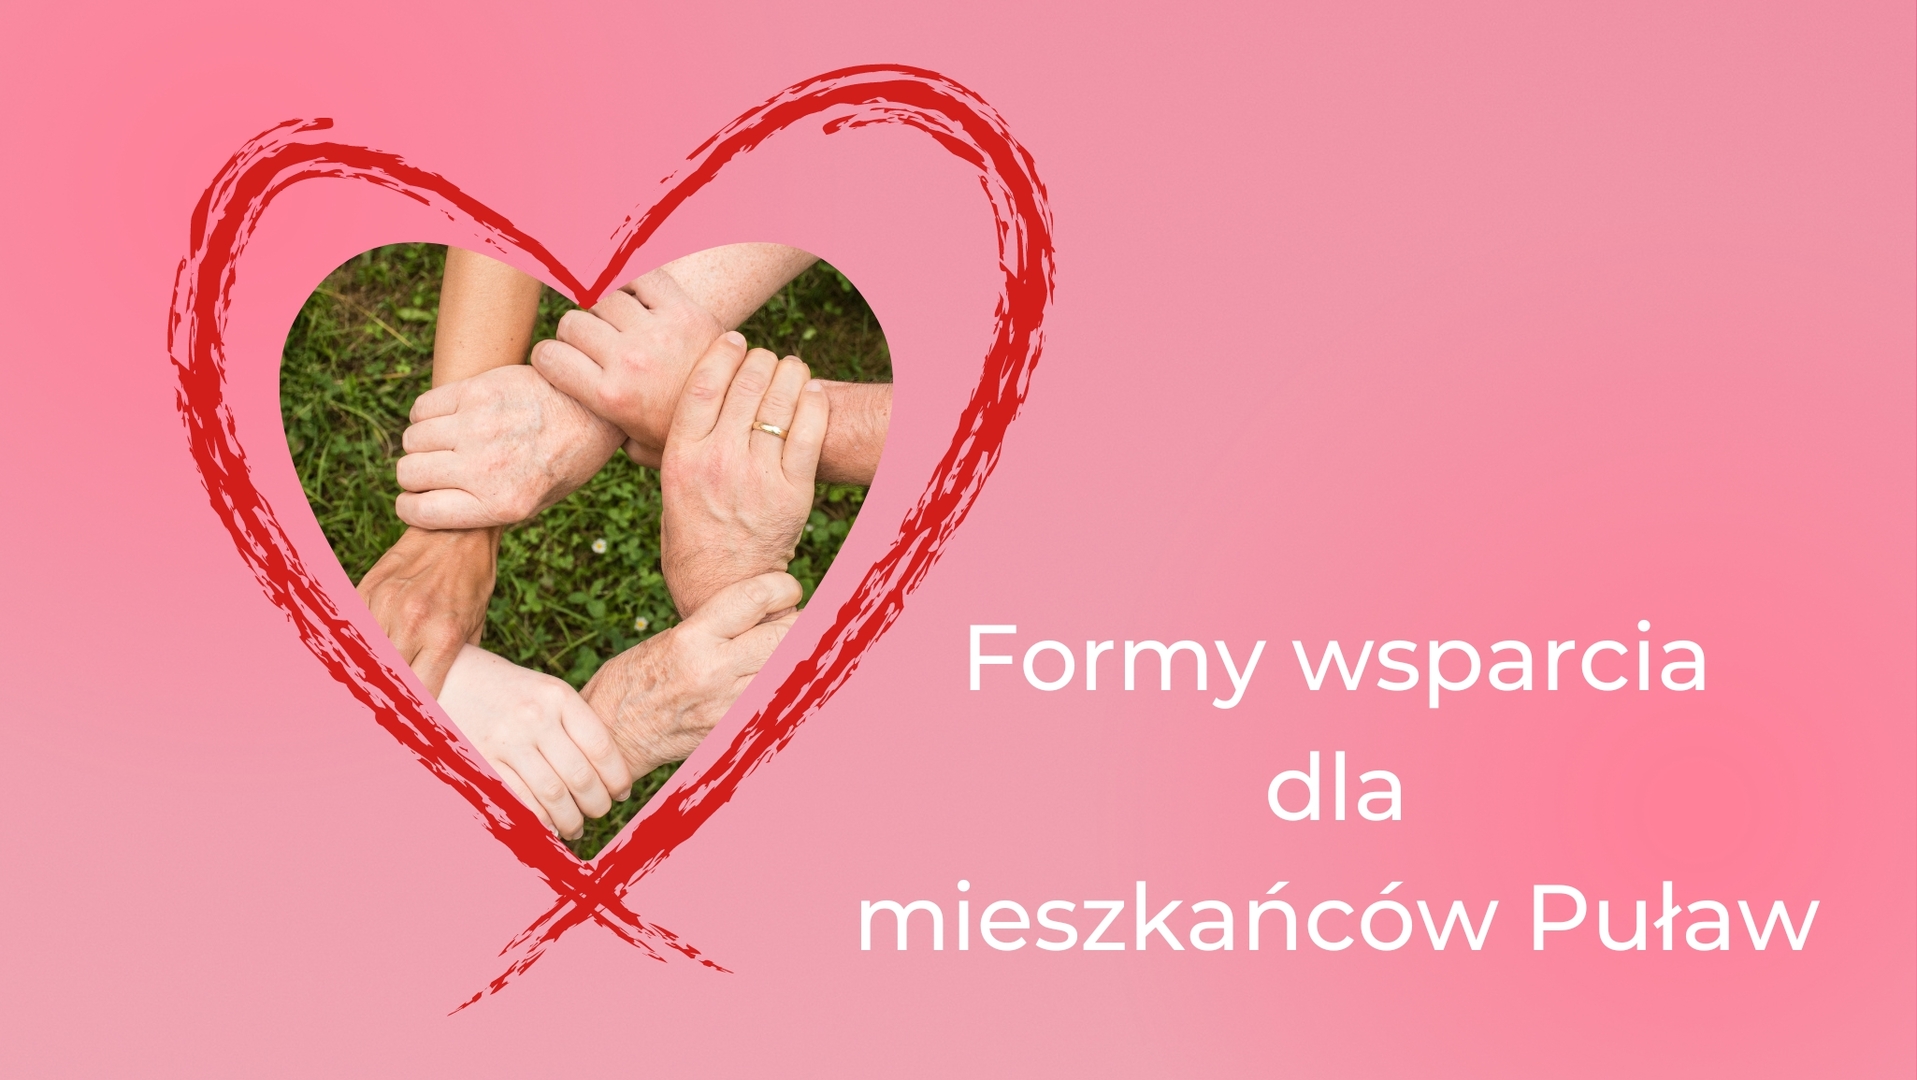 grafika promocyjna aktualności strony  Miejski Ośrodek Pomocy Społecznej  w Puławach